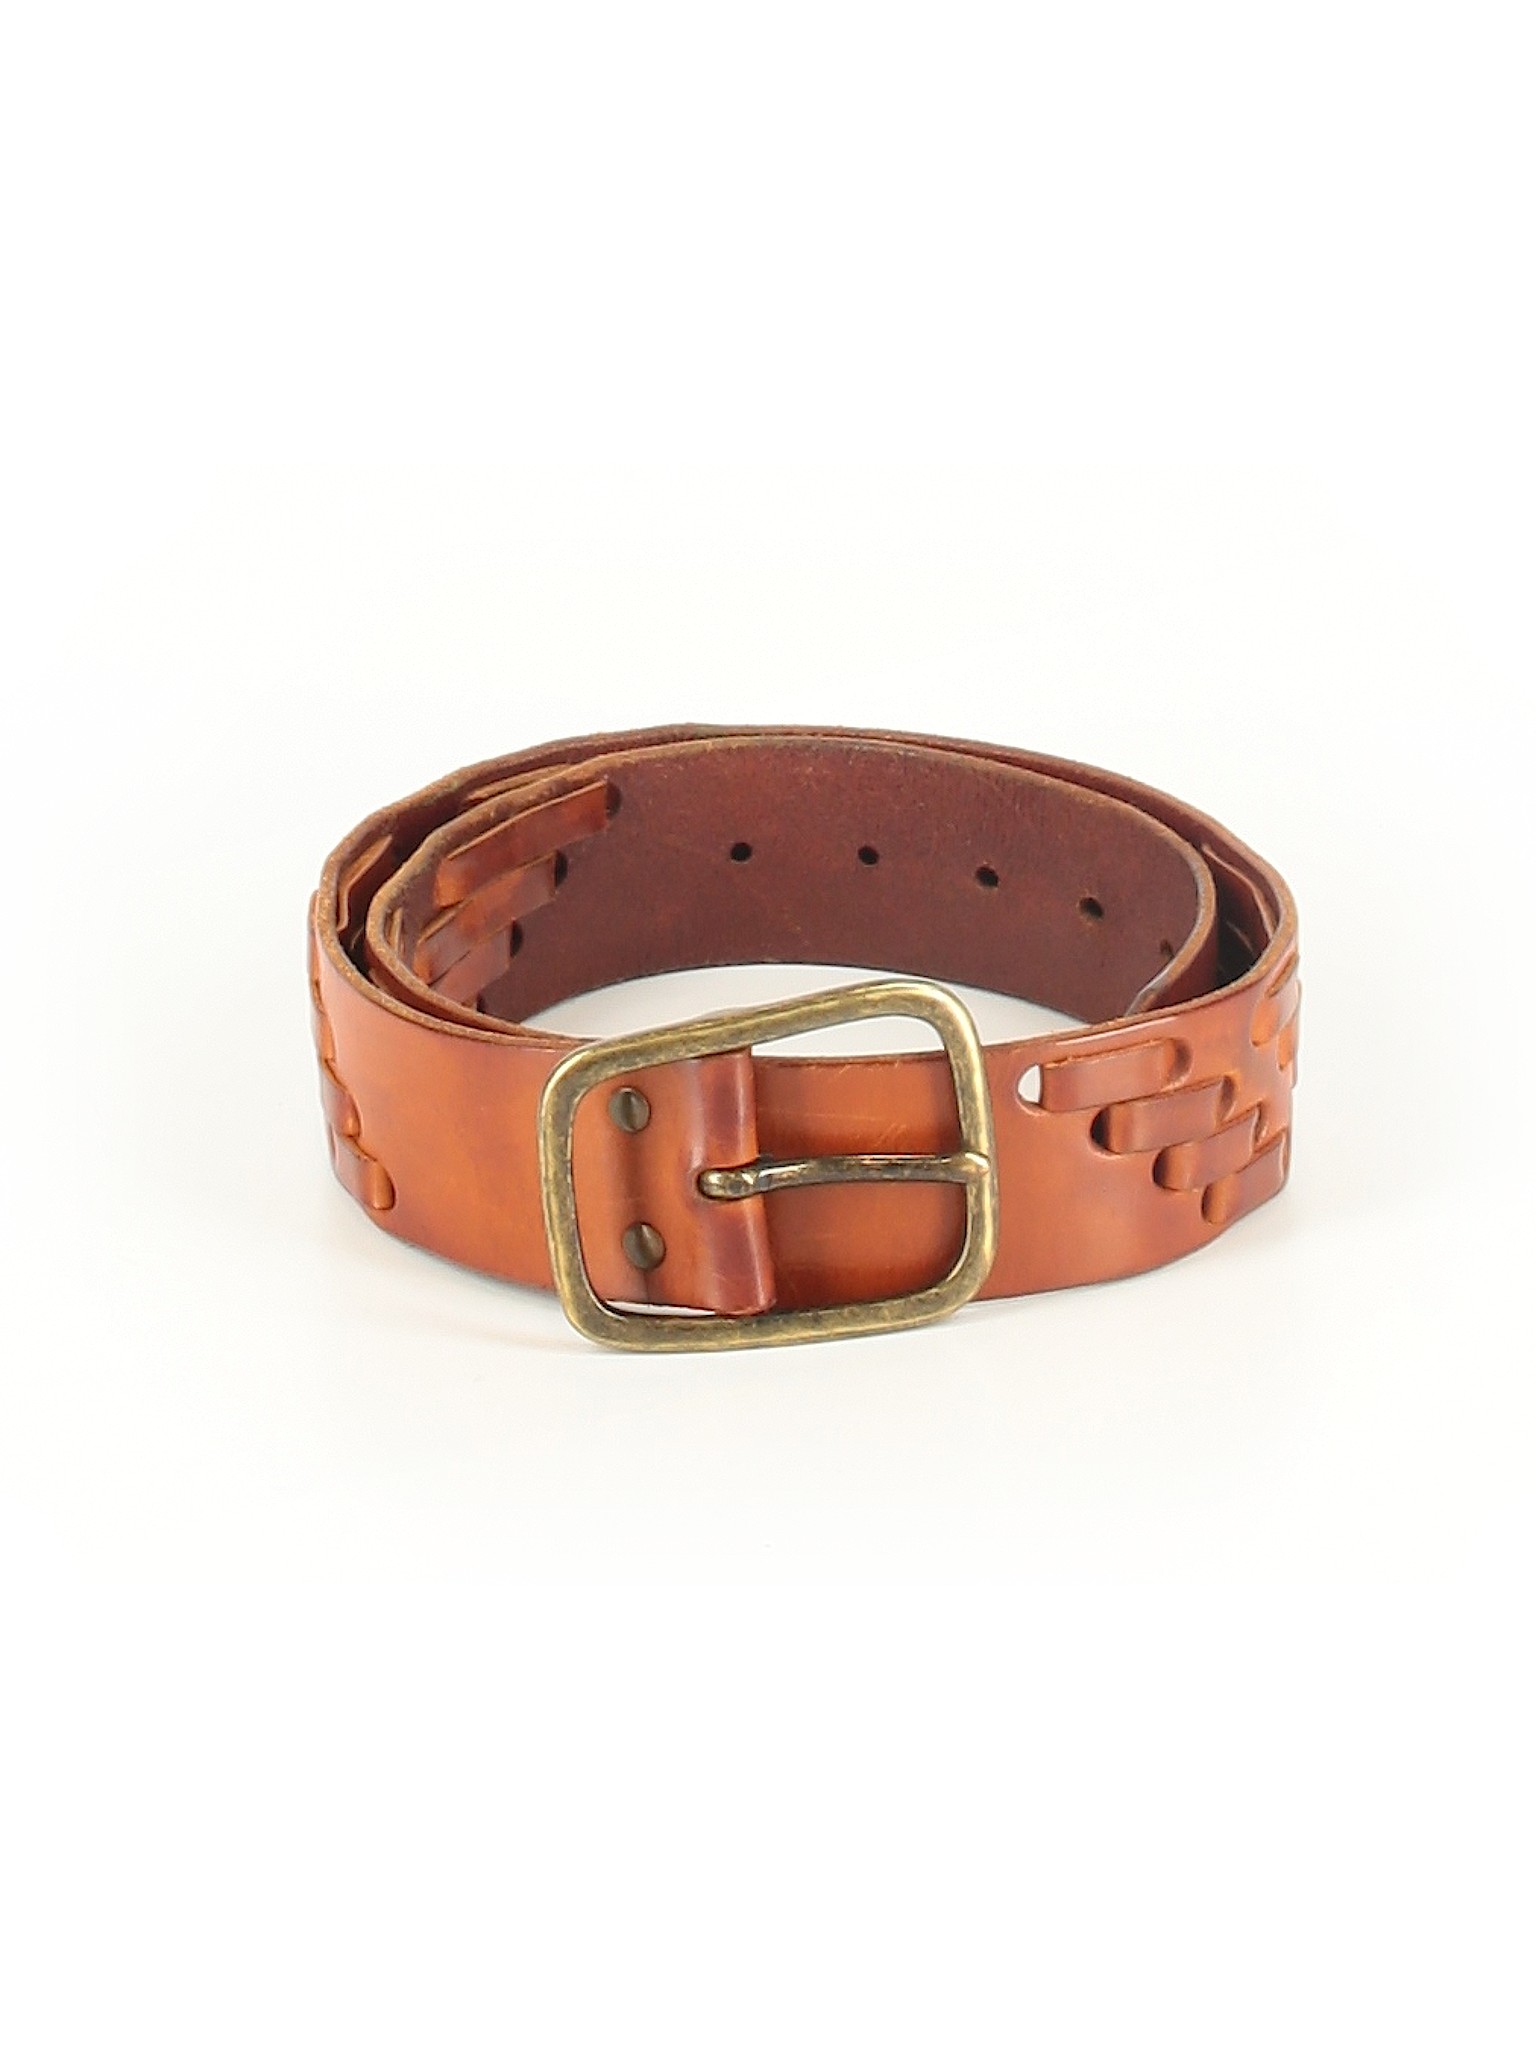 Linea Pelle Women Brown Leather Belt XXS | eBay